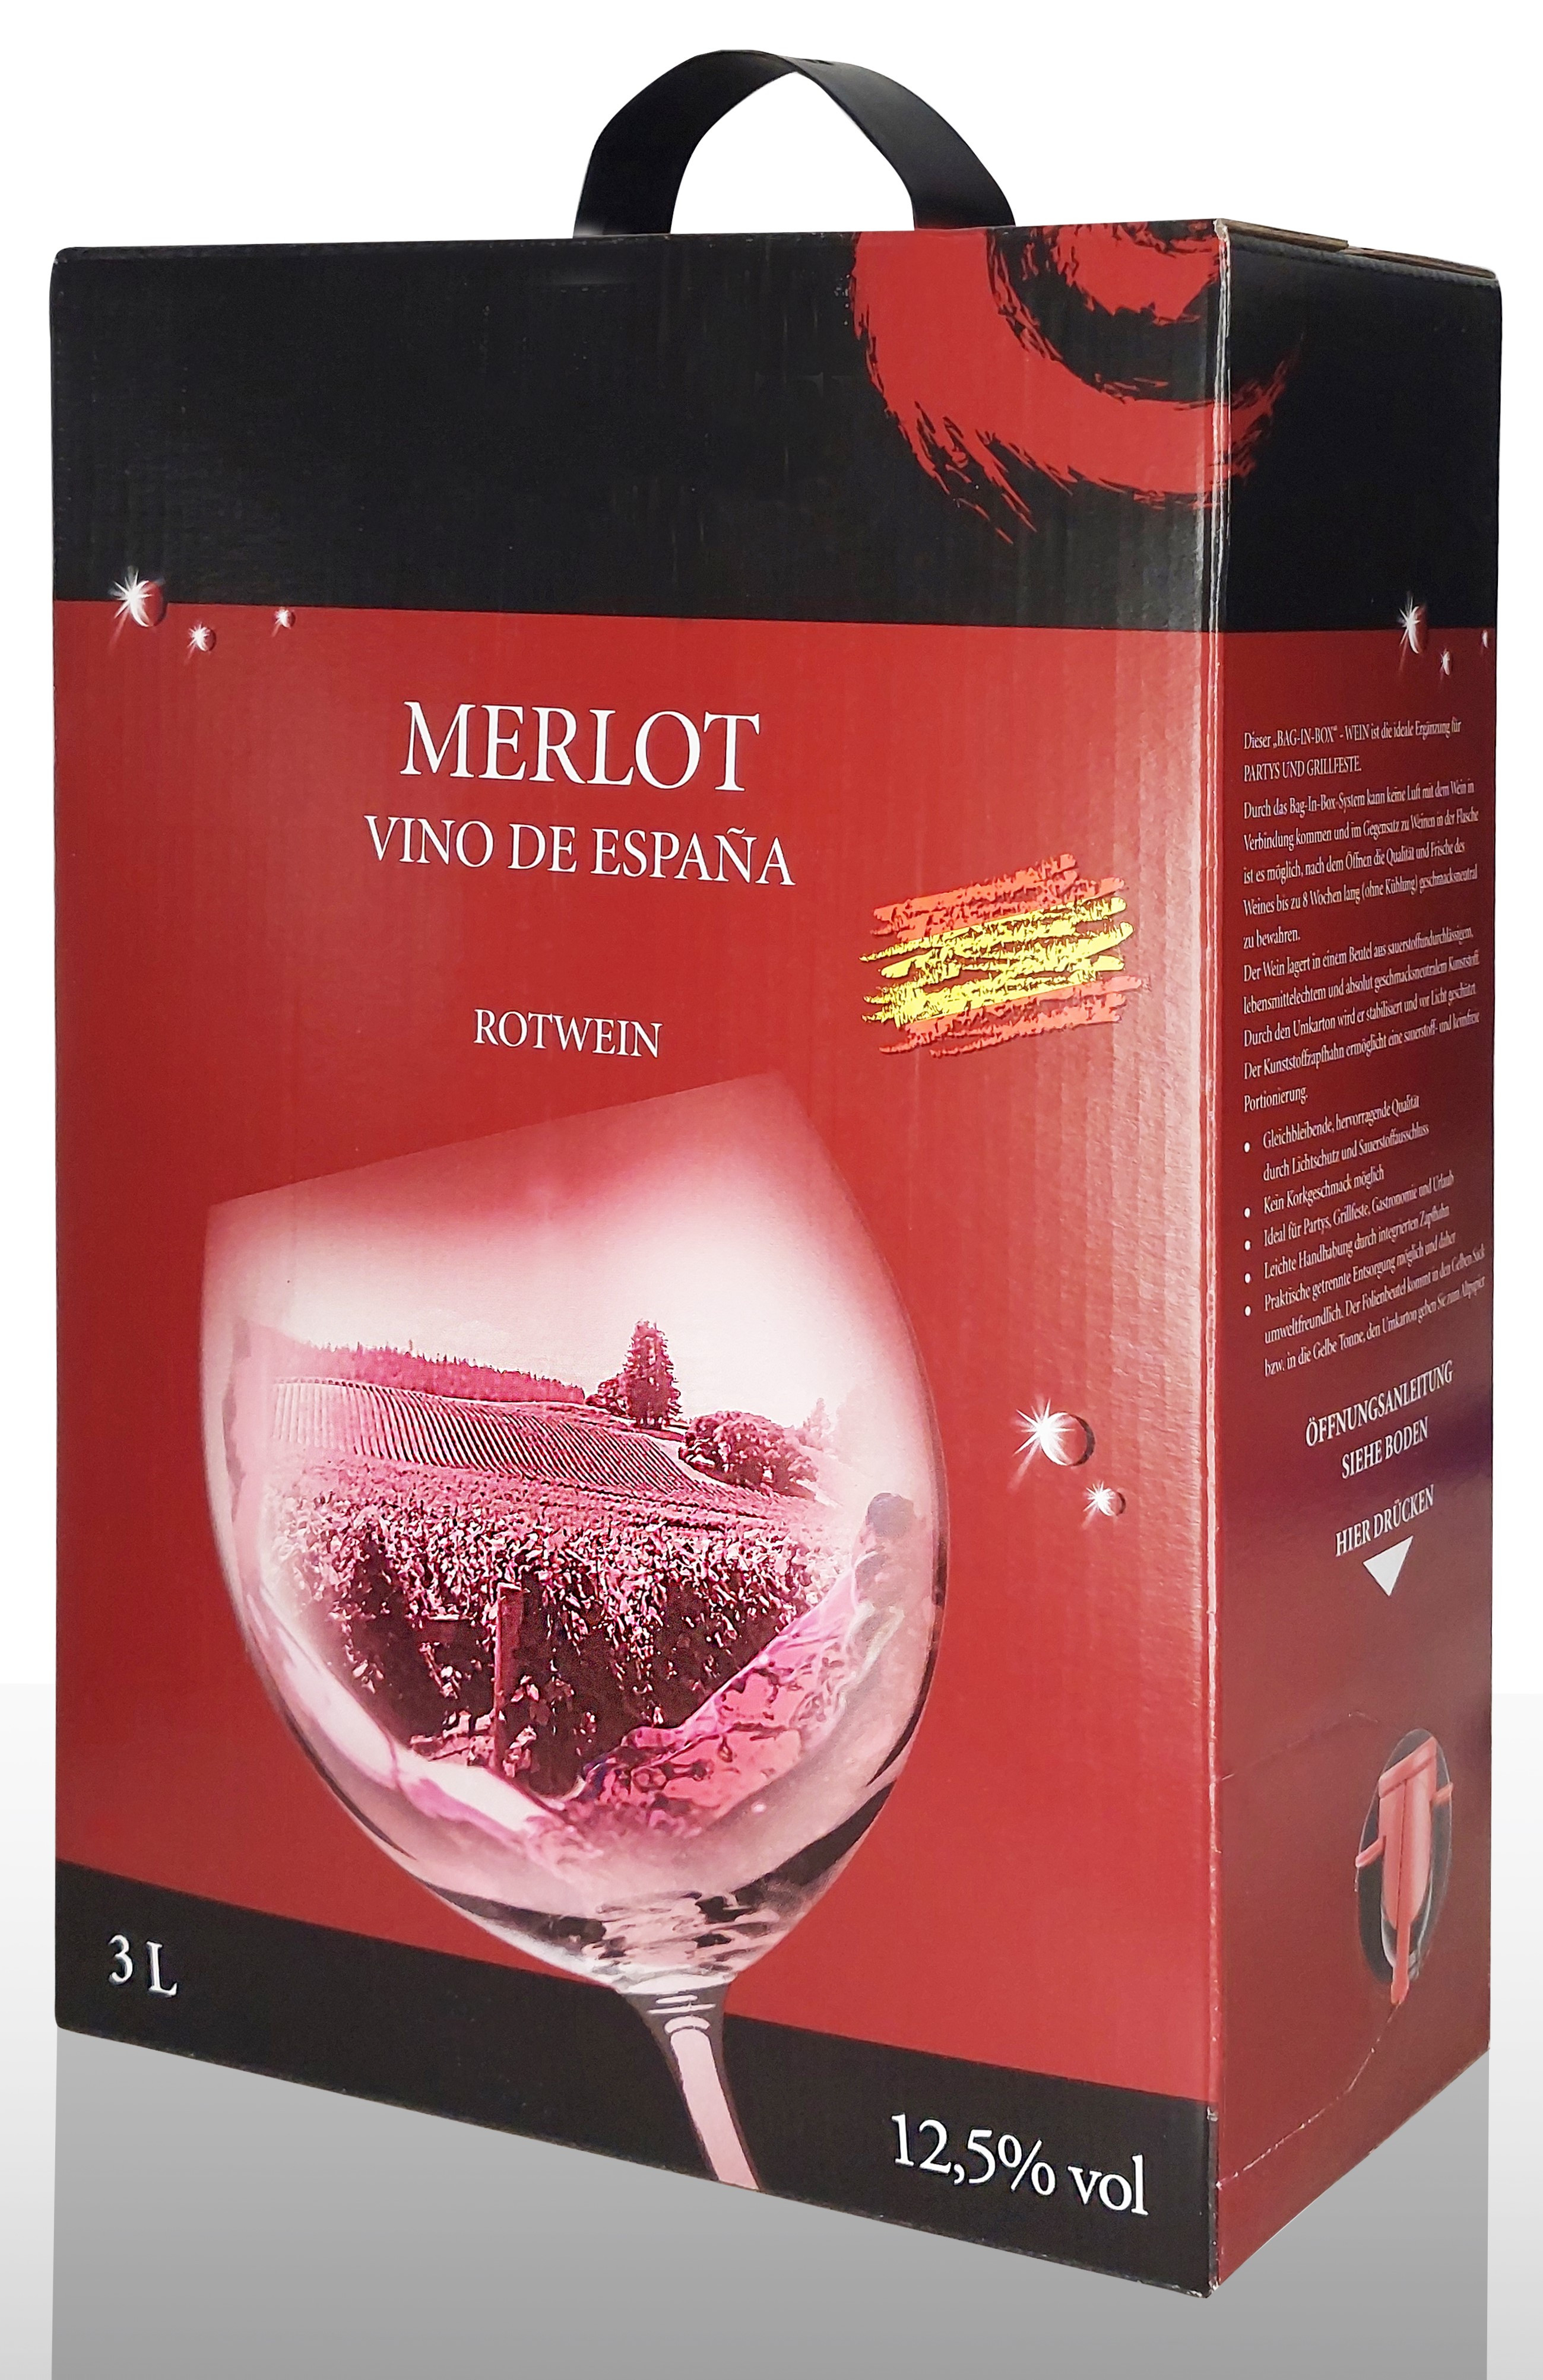 Merlot Weine - Premium Box - in ,Weinhandel,Qualitätsweine Bag Wein, -Vino Delicato Weine